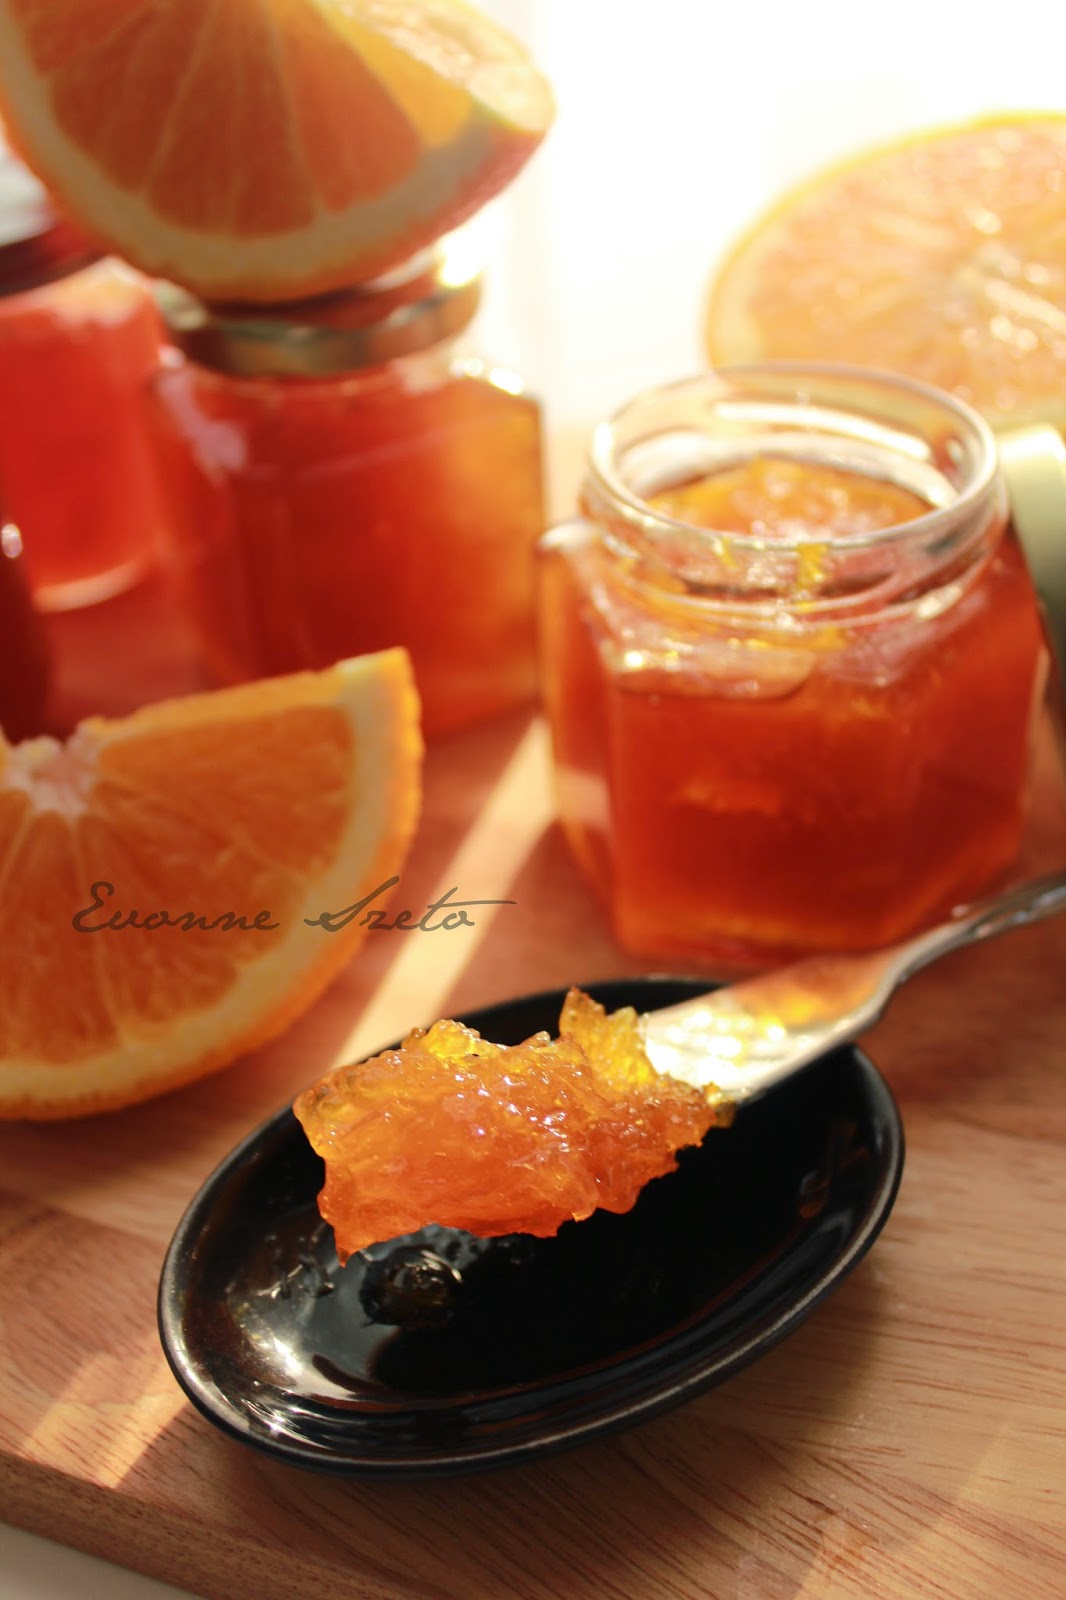 sweet from the heart: Homemade Orange Jam